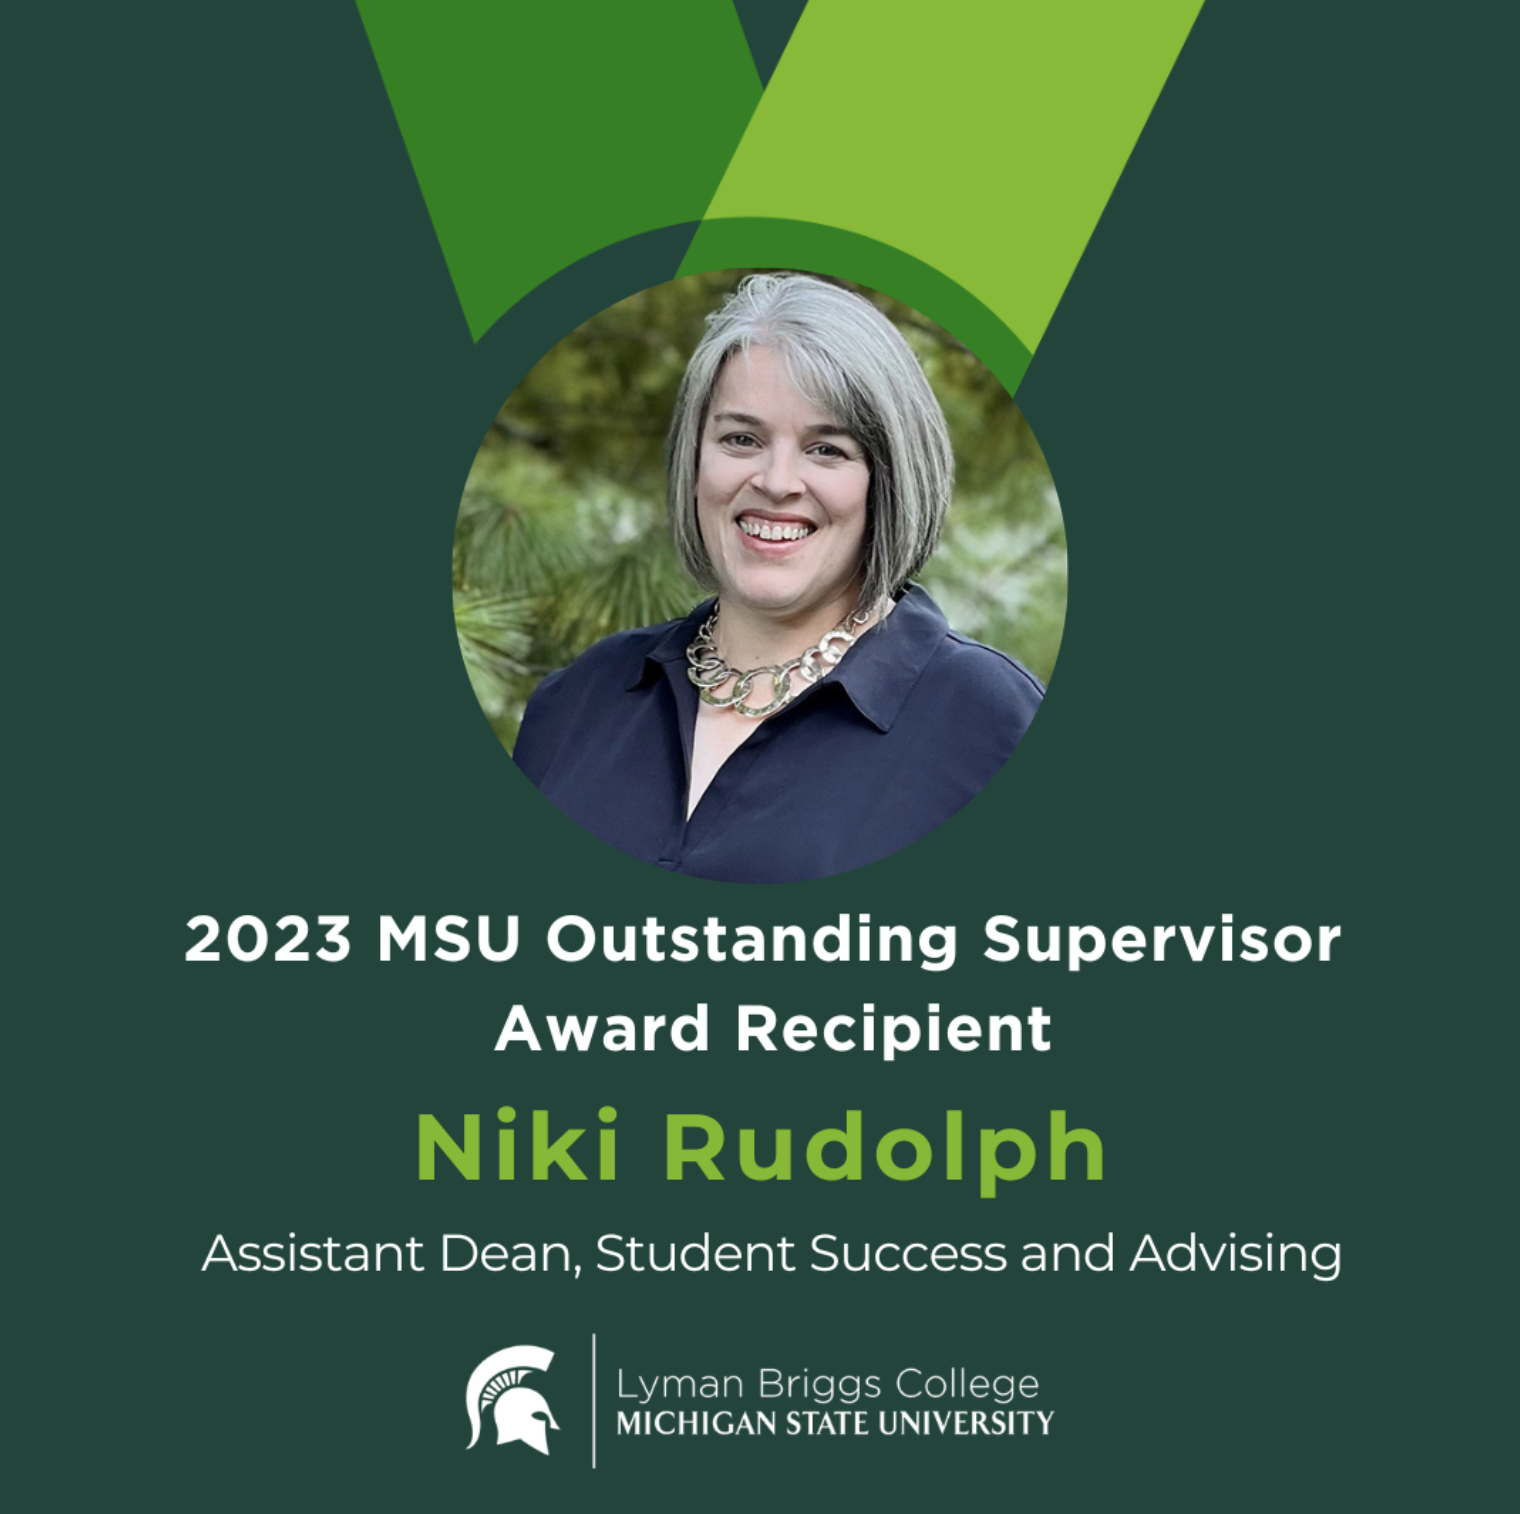 Niki Rudolph, 2023 MSU Outstanding Supervisor Award Recipient